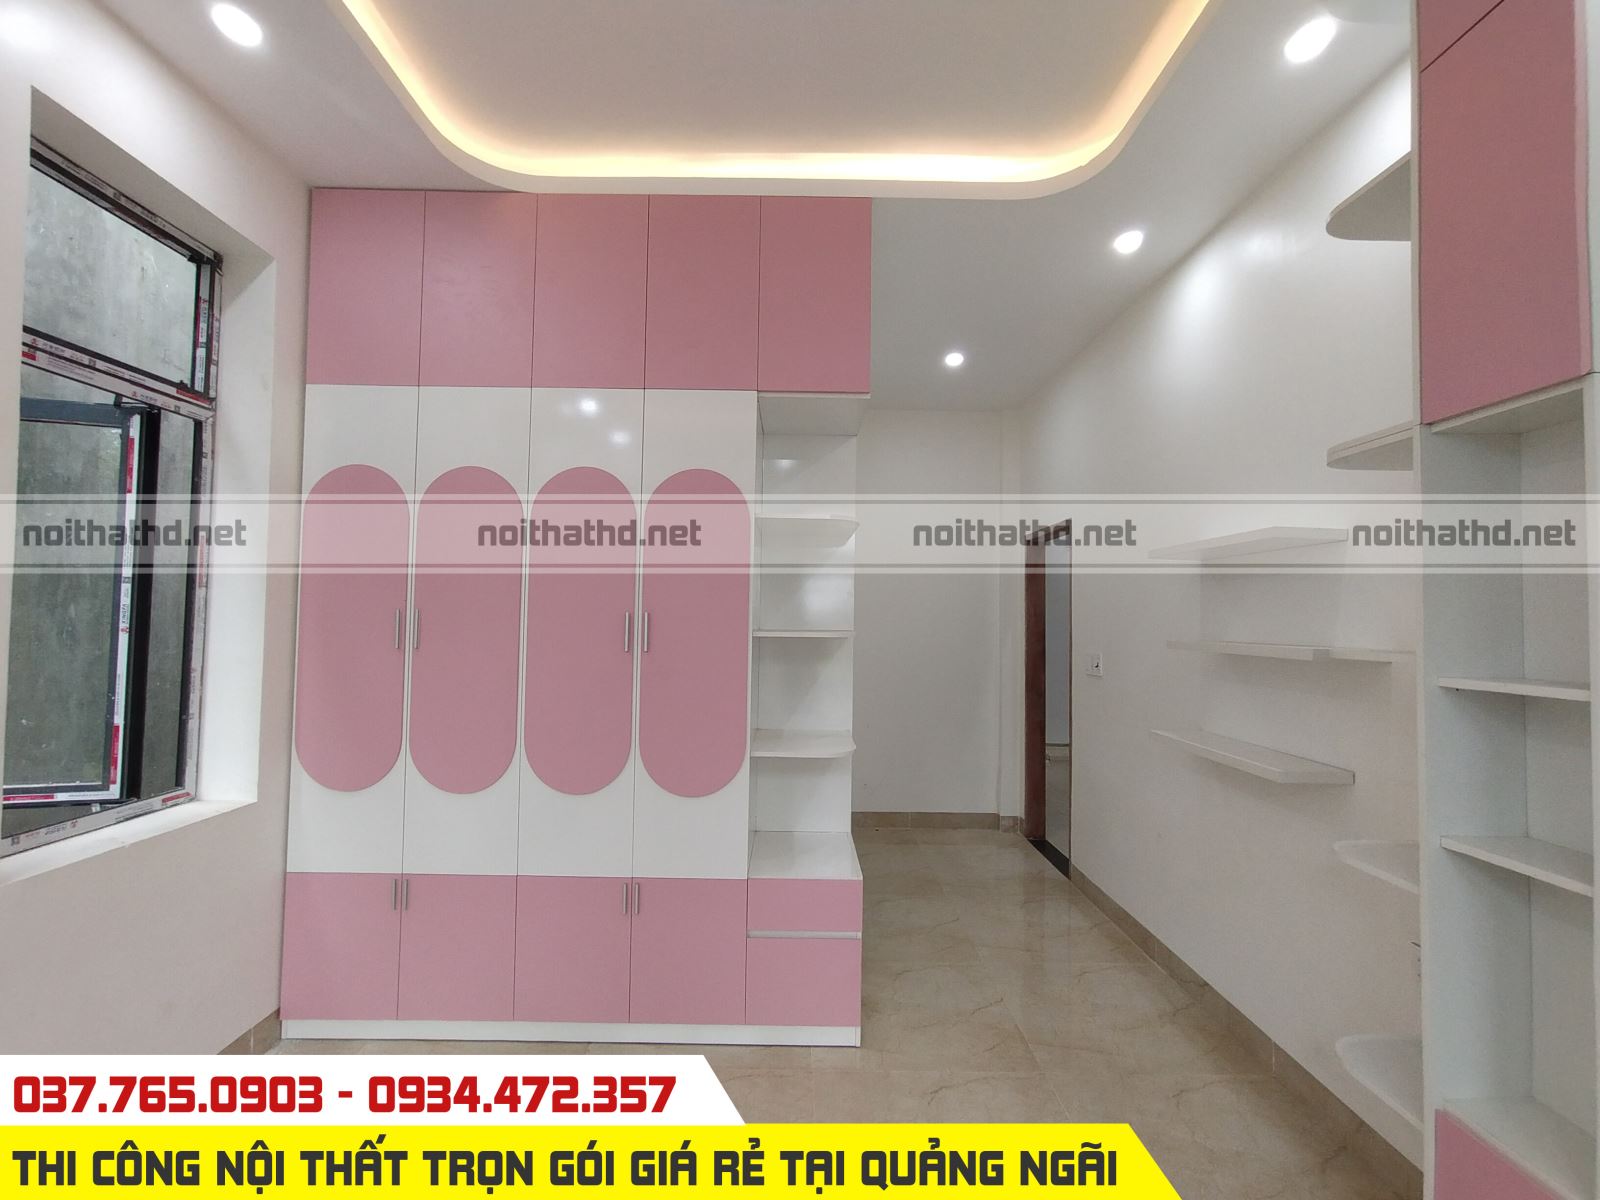 Thiết kế thi công nội thất phòng ngủ nhà khách tại TP Quảng Ngãi 2021